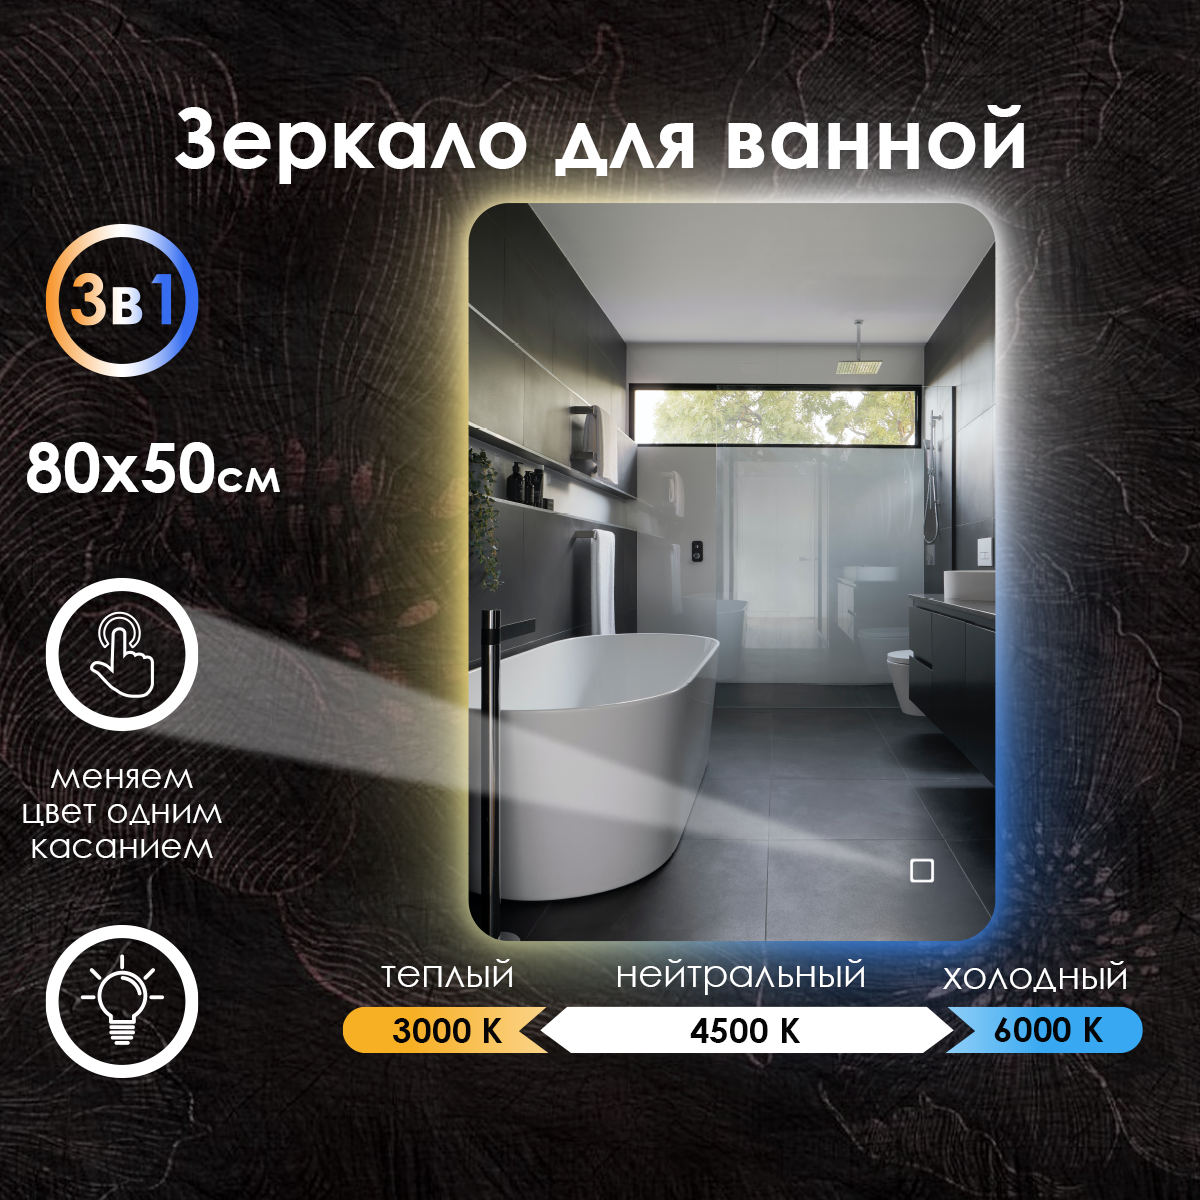 Зеркало для ванной Maskota Lexa c контурной подсветкой, температурный режим 3в1, антизапотевание, часы, сенсор, диммер, IP44, 80х50 см